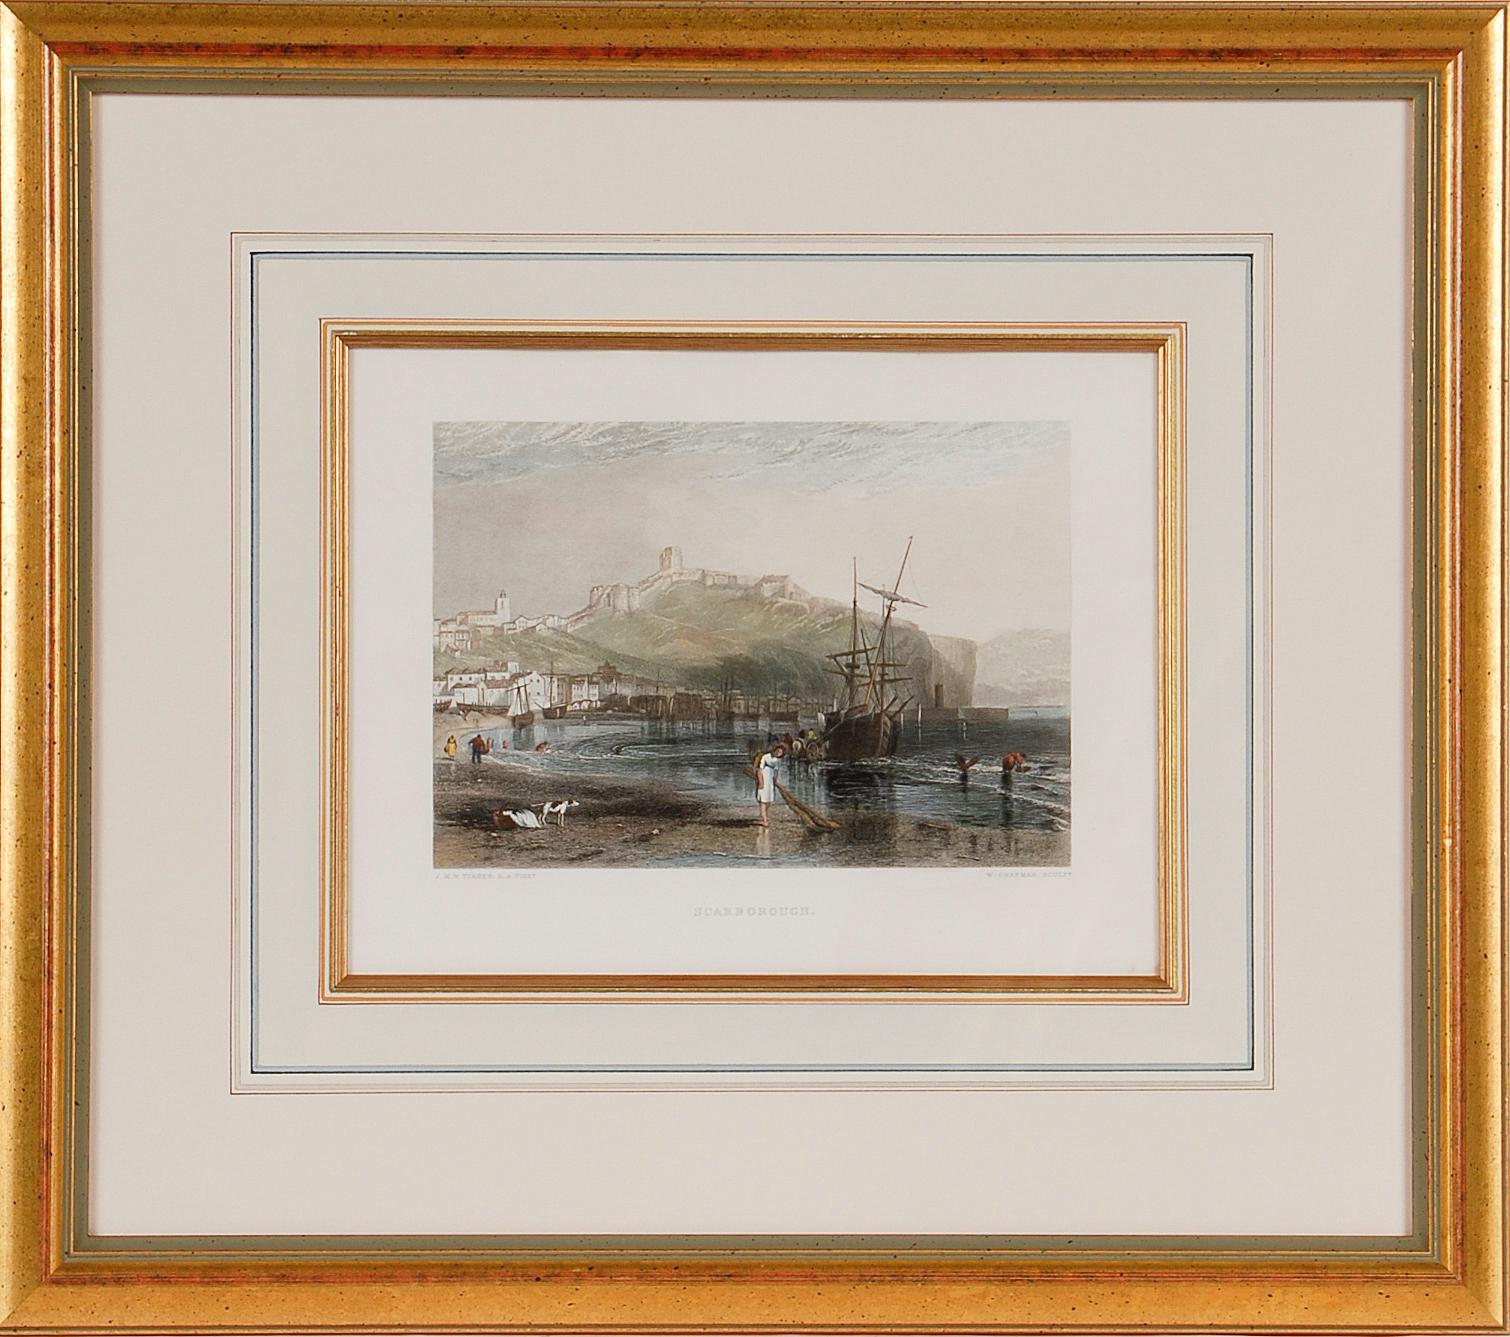 Eine Ansicht von Scarborough, England: Ein gerahmter Kupferstich nach J. M. W. Turner, 19. Jahrhundert